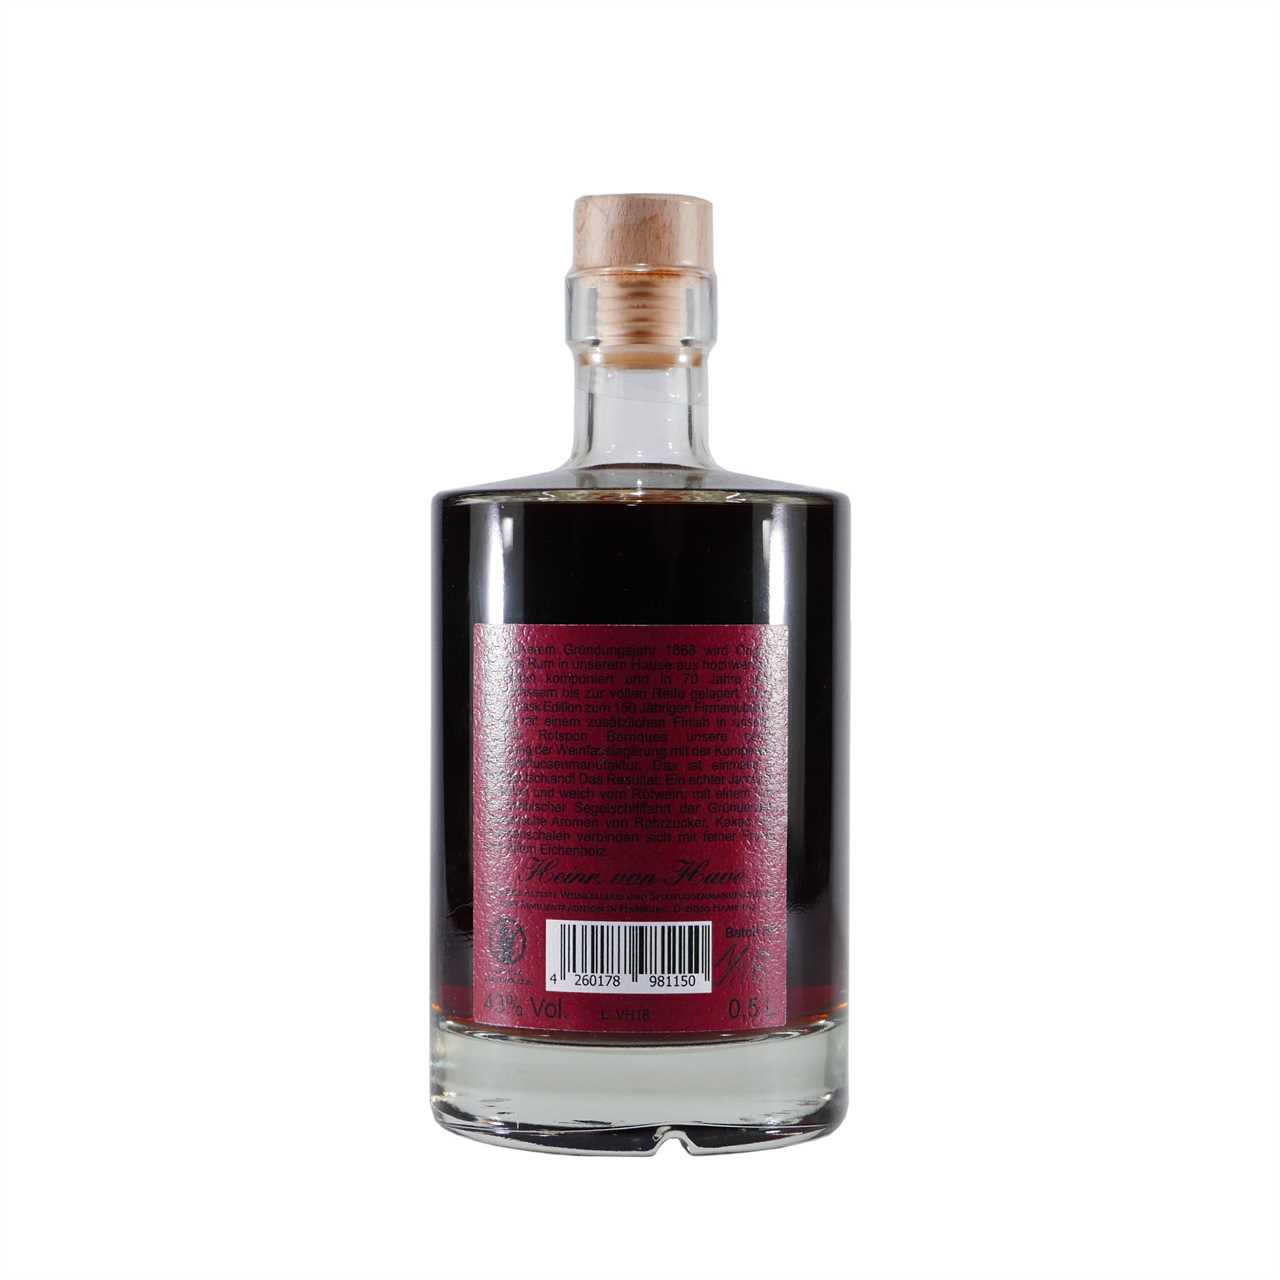 Heinr. von Have Jamaica Rum Rotspon finished